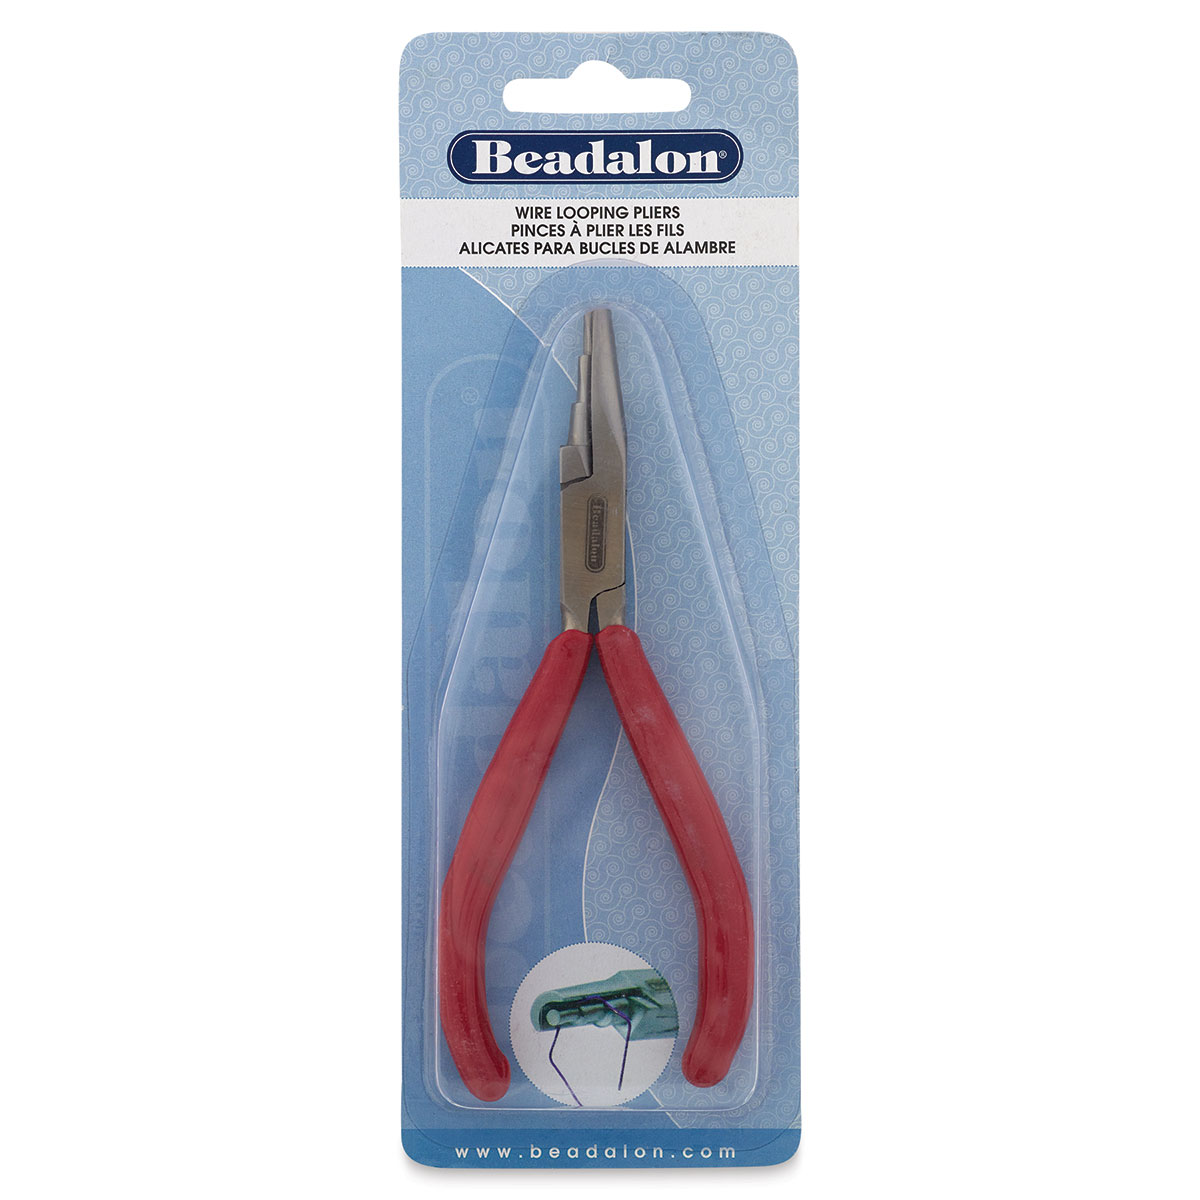 Beadalon Standard Wire Looping Pliers